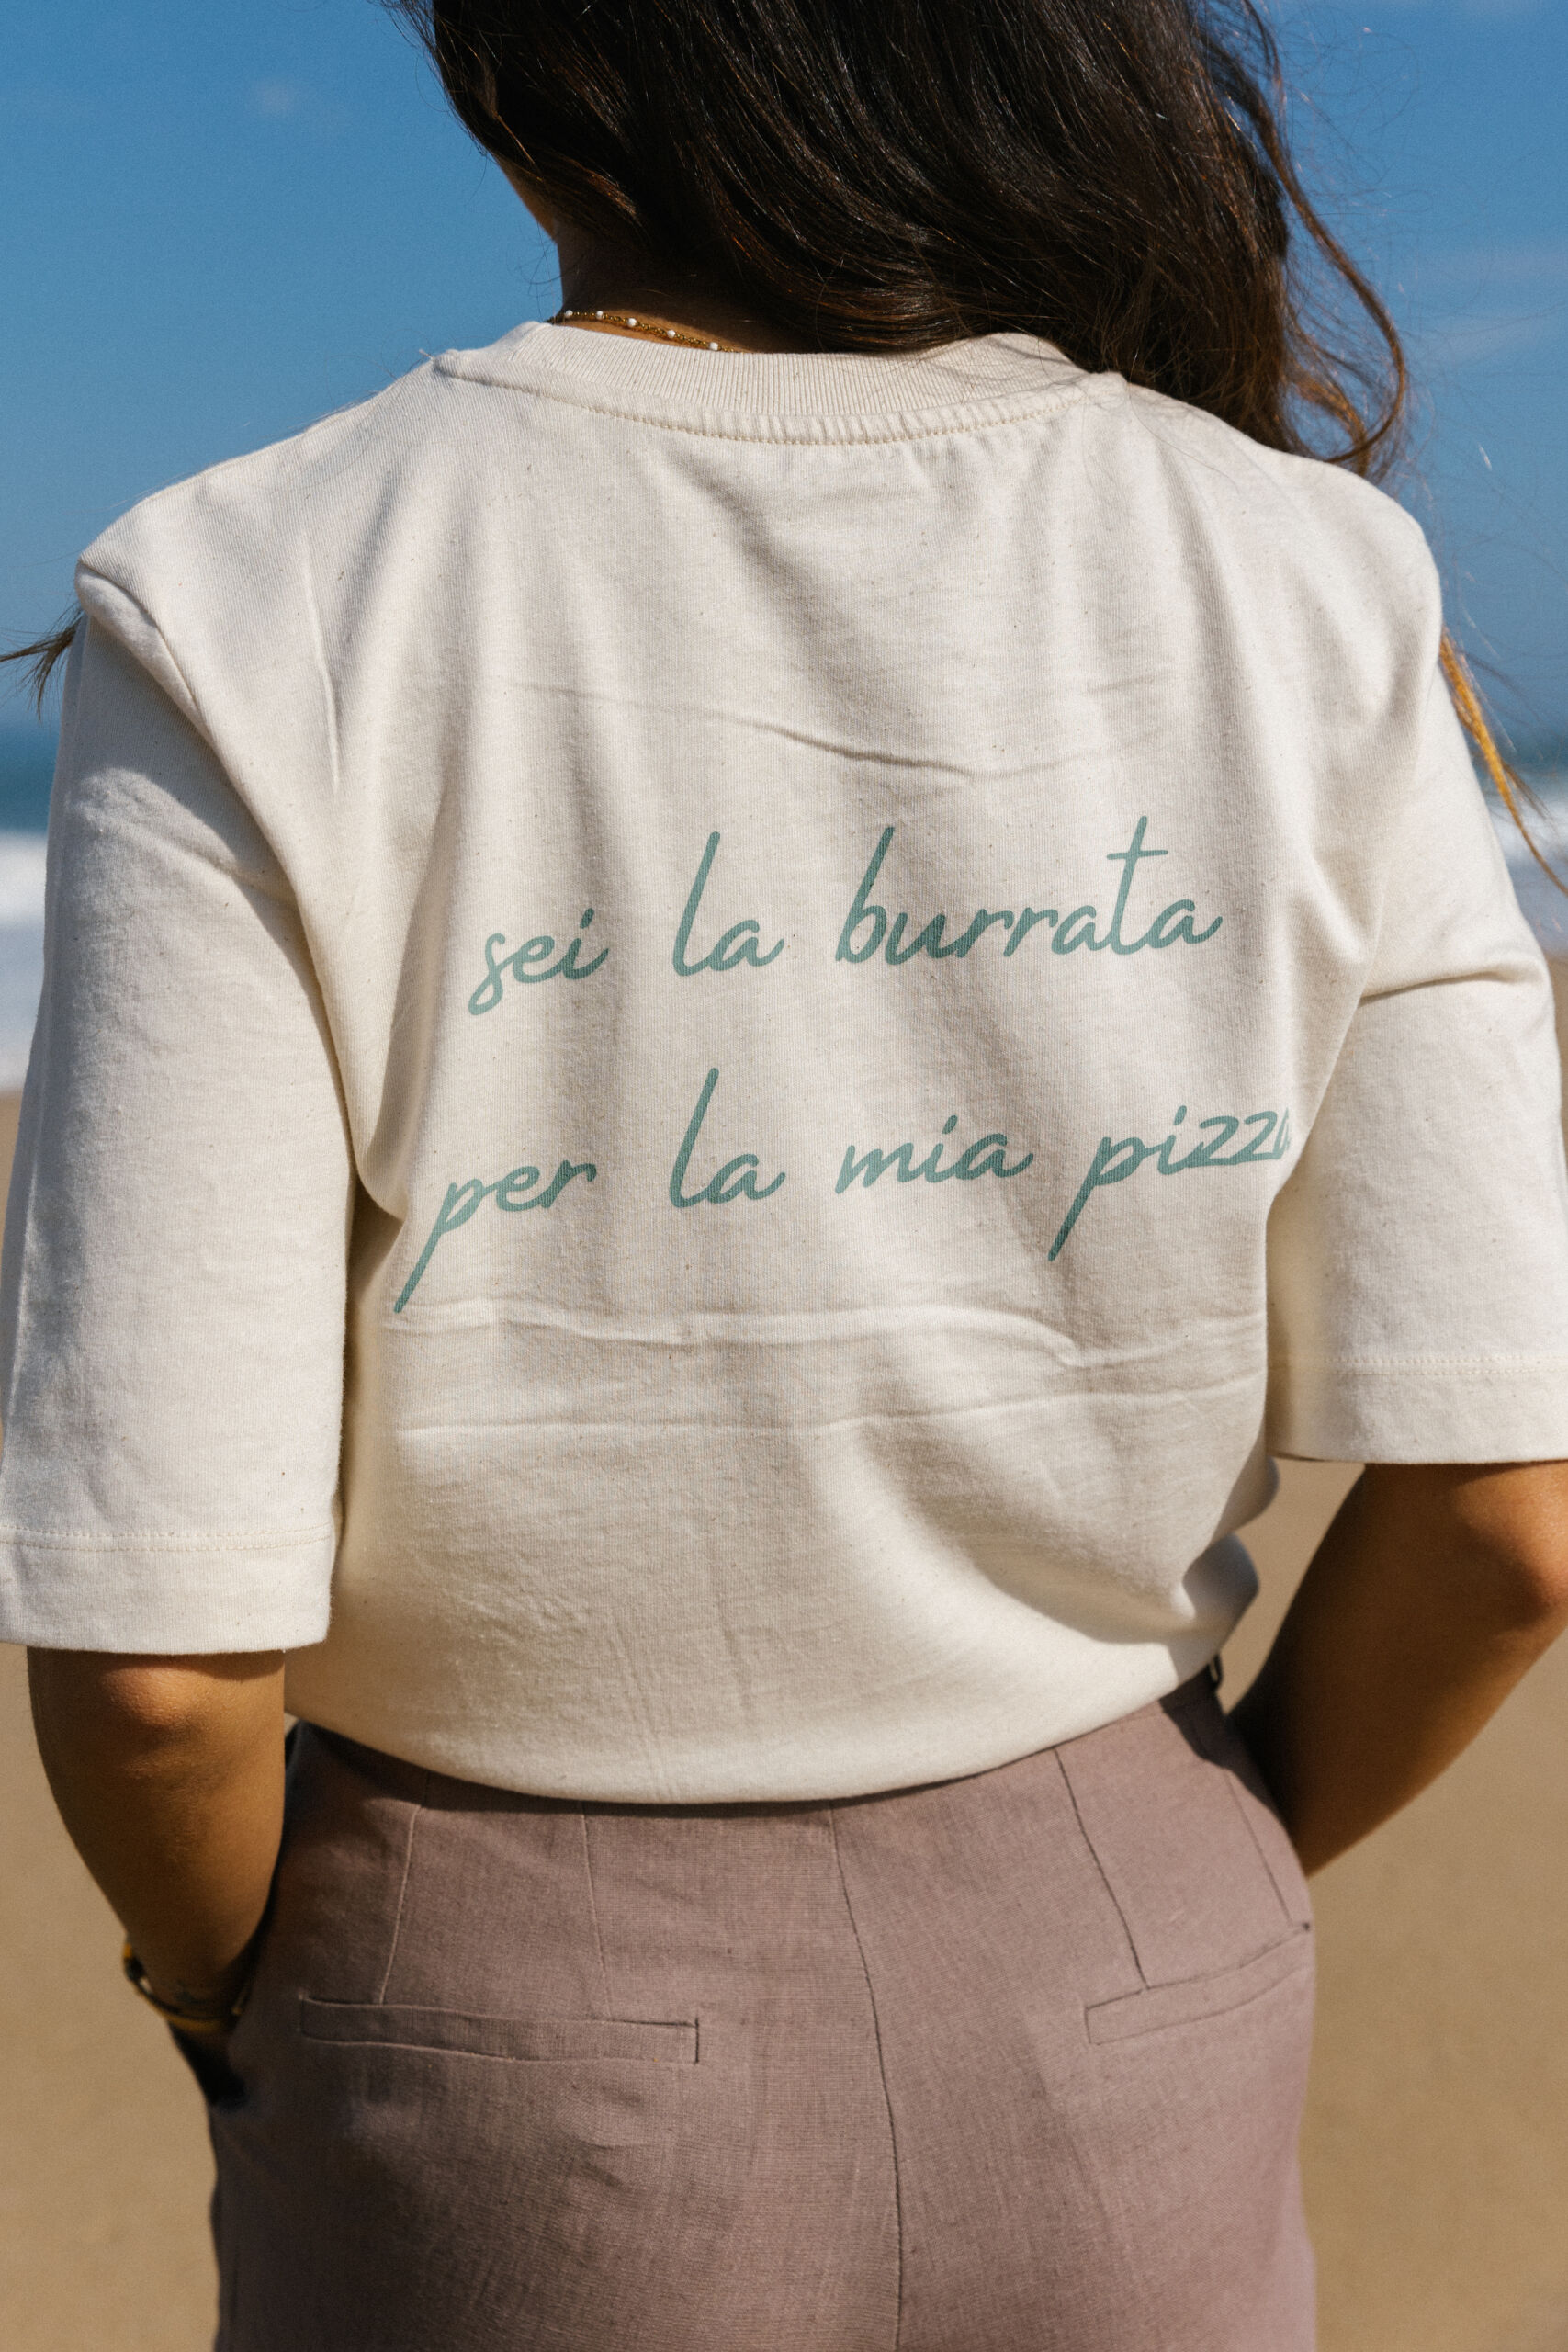 t-shirt z bawełny organicznej z napisem Ciao amore